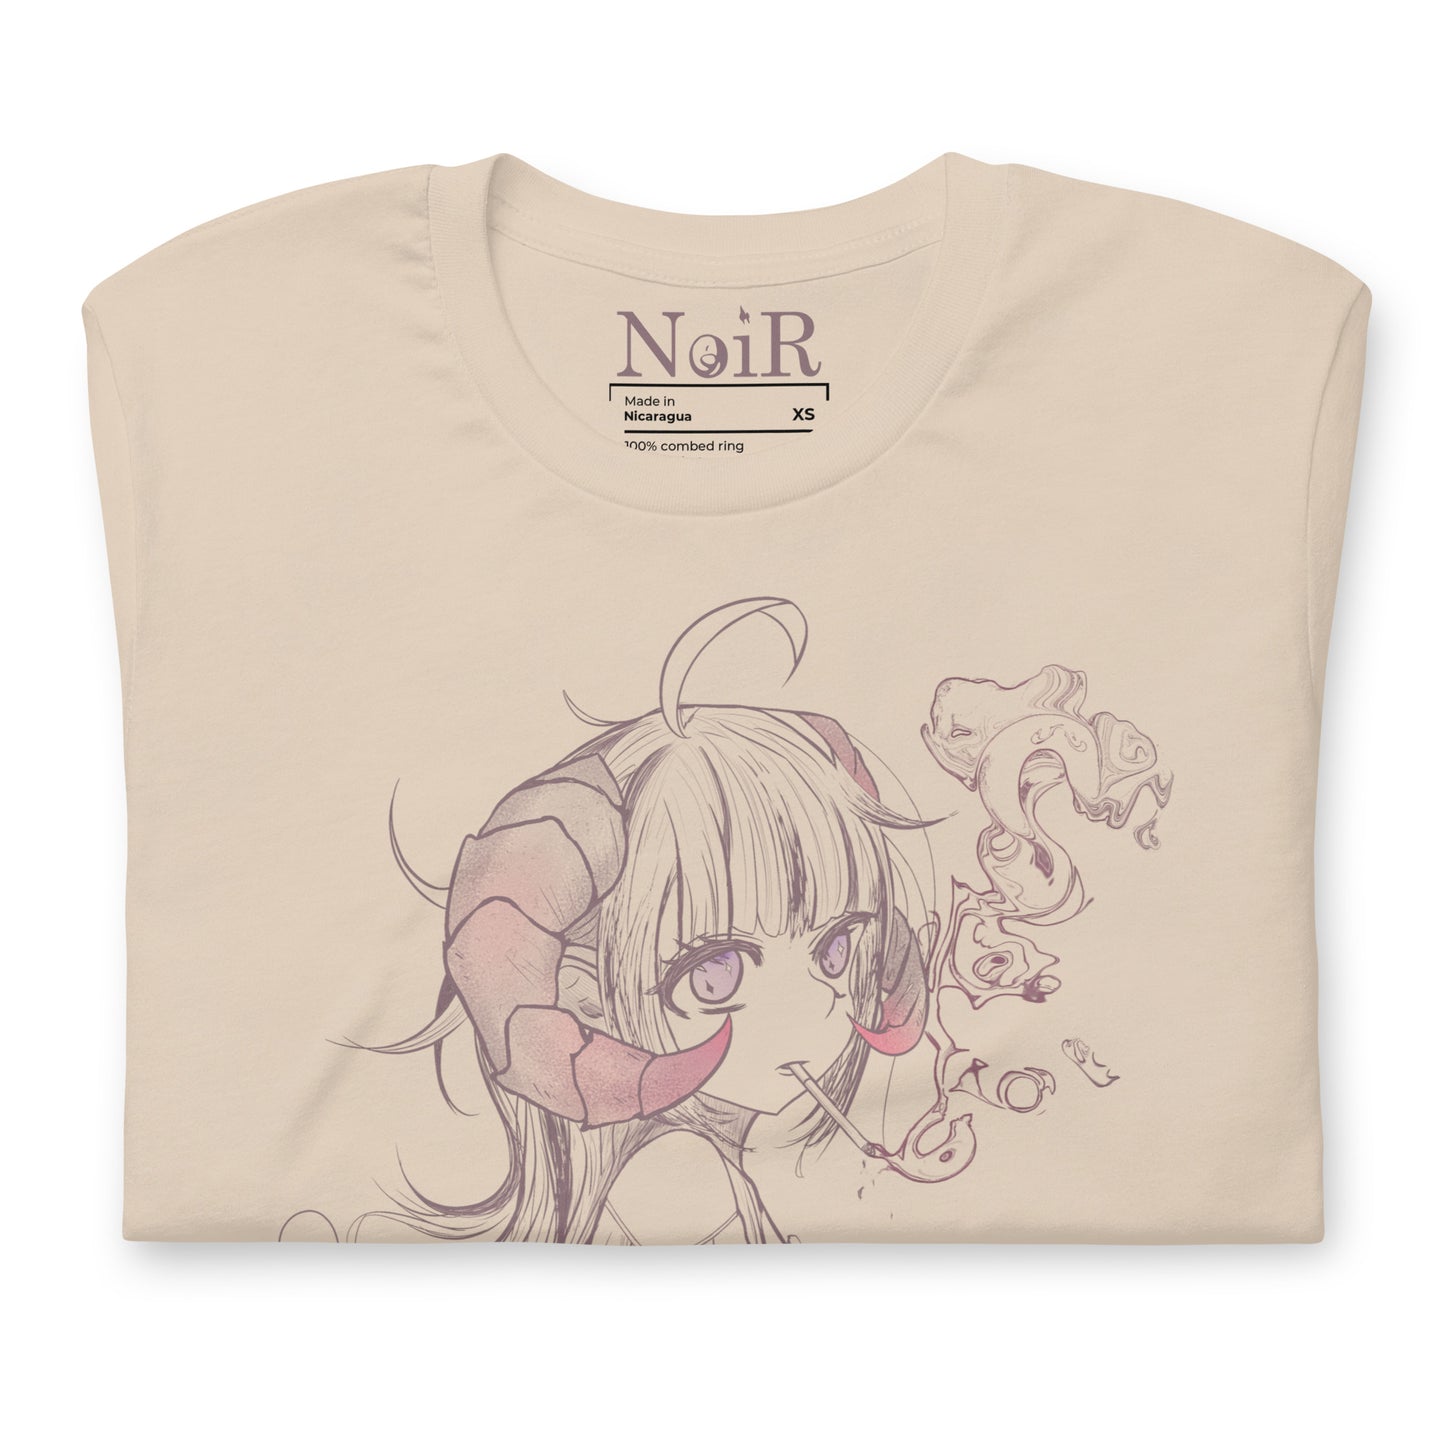 NoiR Original Series 002 "Noa" Soft Cream T-Shirt